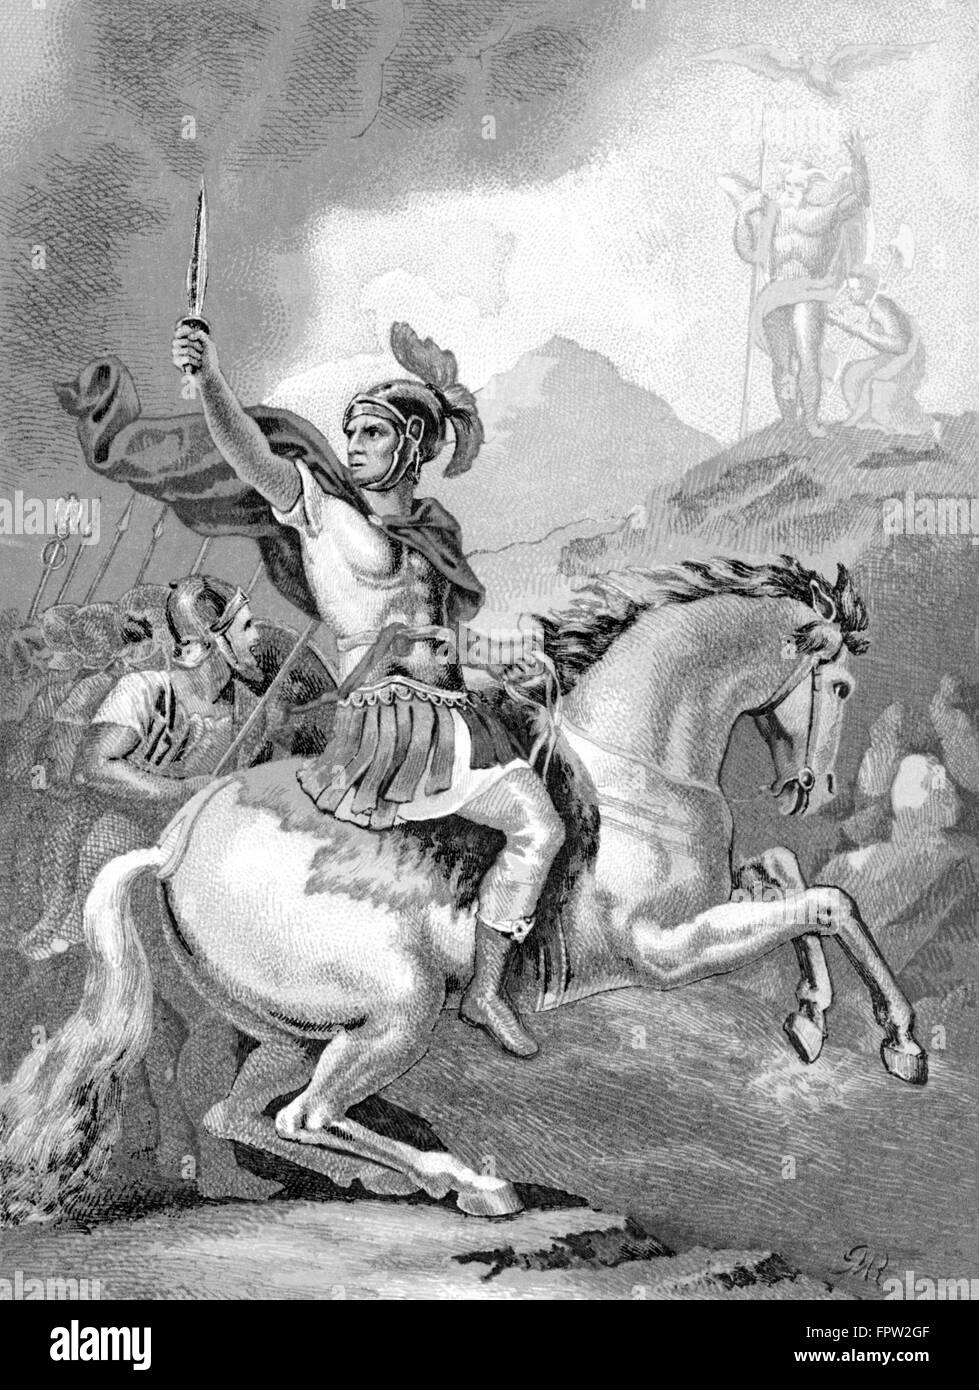 49 BC sfida decisiva Julius Caesar irreversibilmente Attraversamento fiume Rubicone su War Horse sventolando spada leader dell'esercito romano Foto Stock